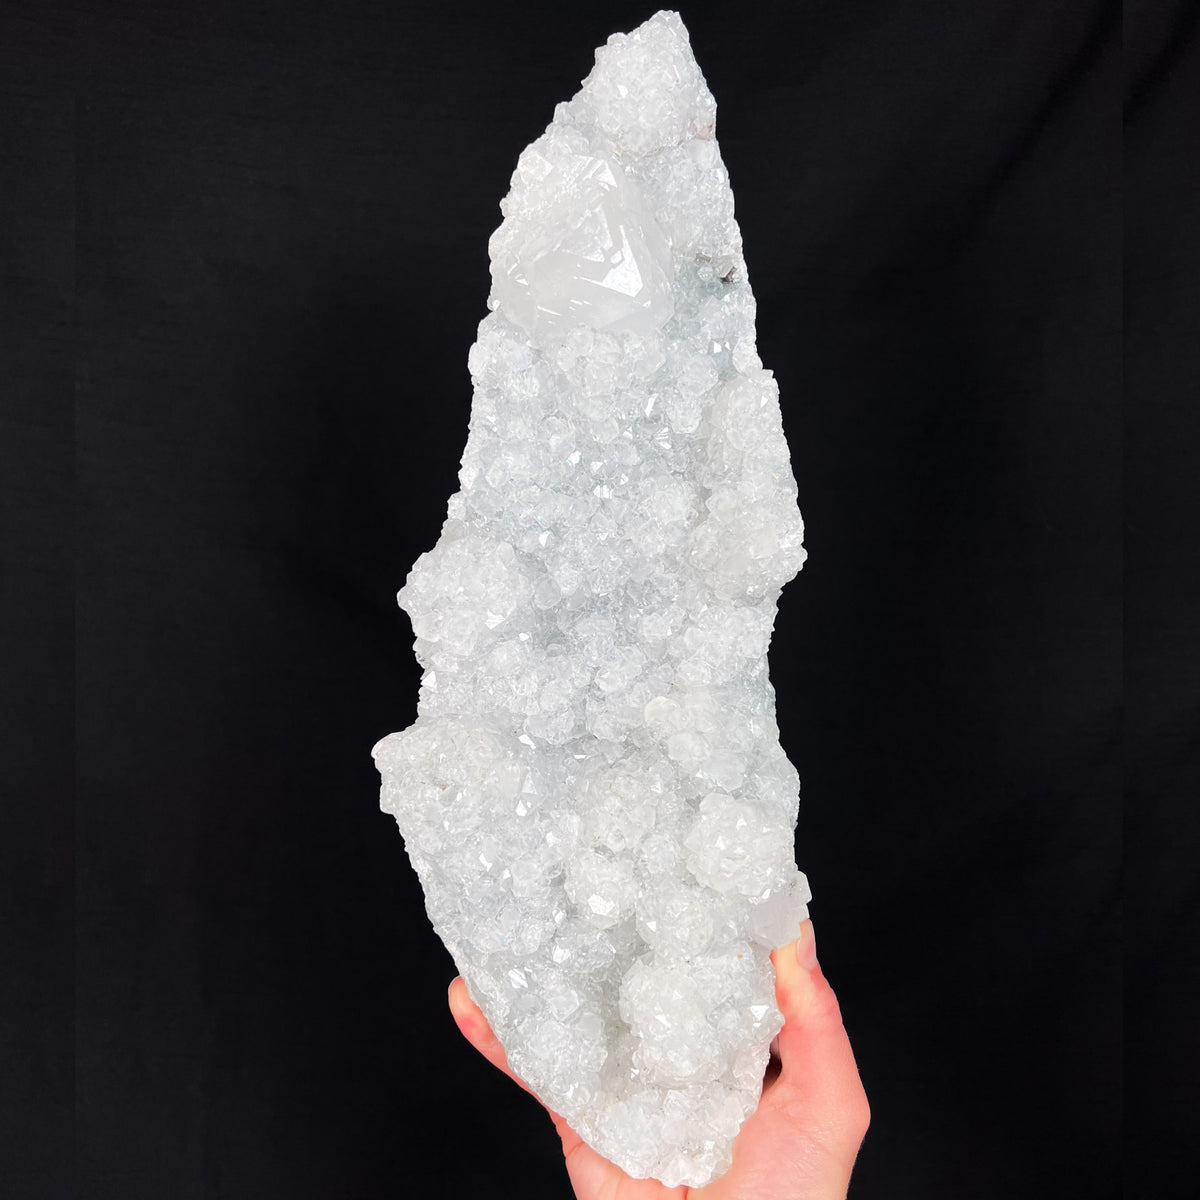 Extra Large Apophyllite Crystal Specimen